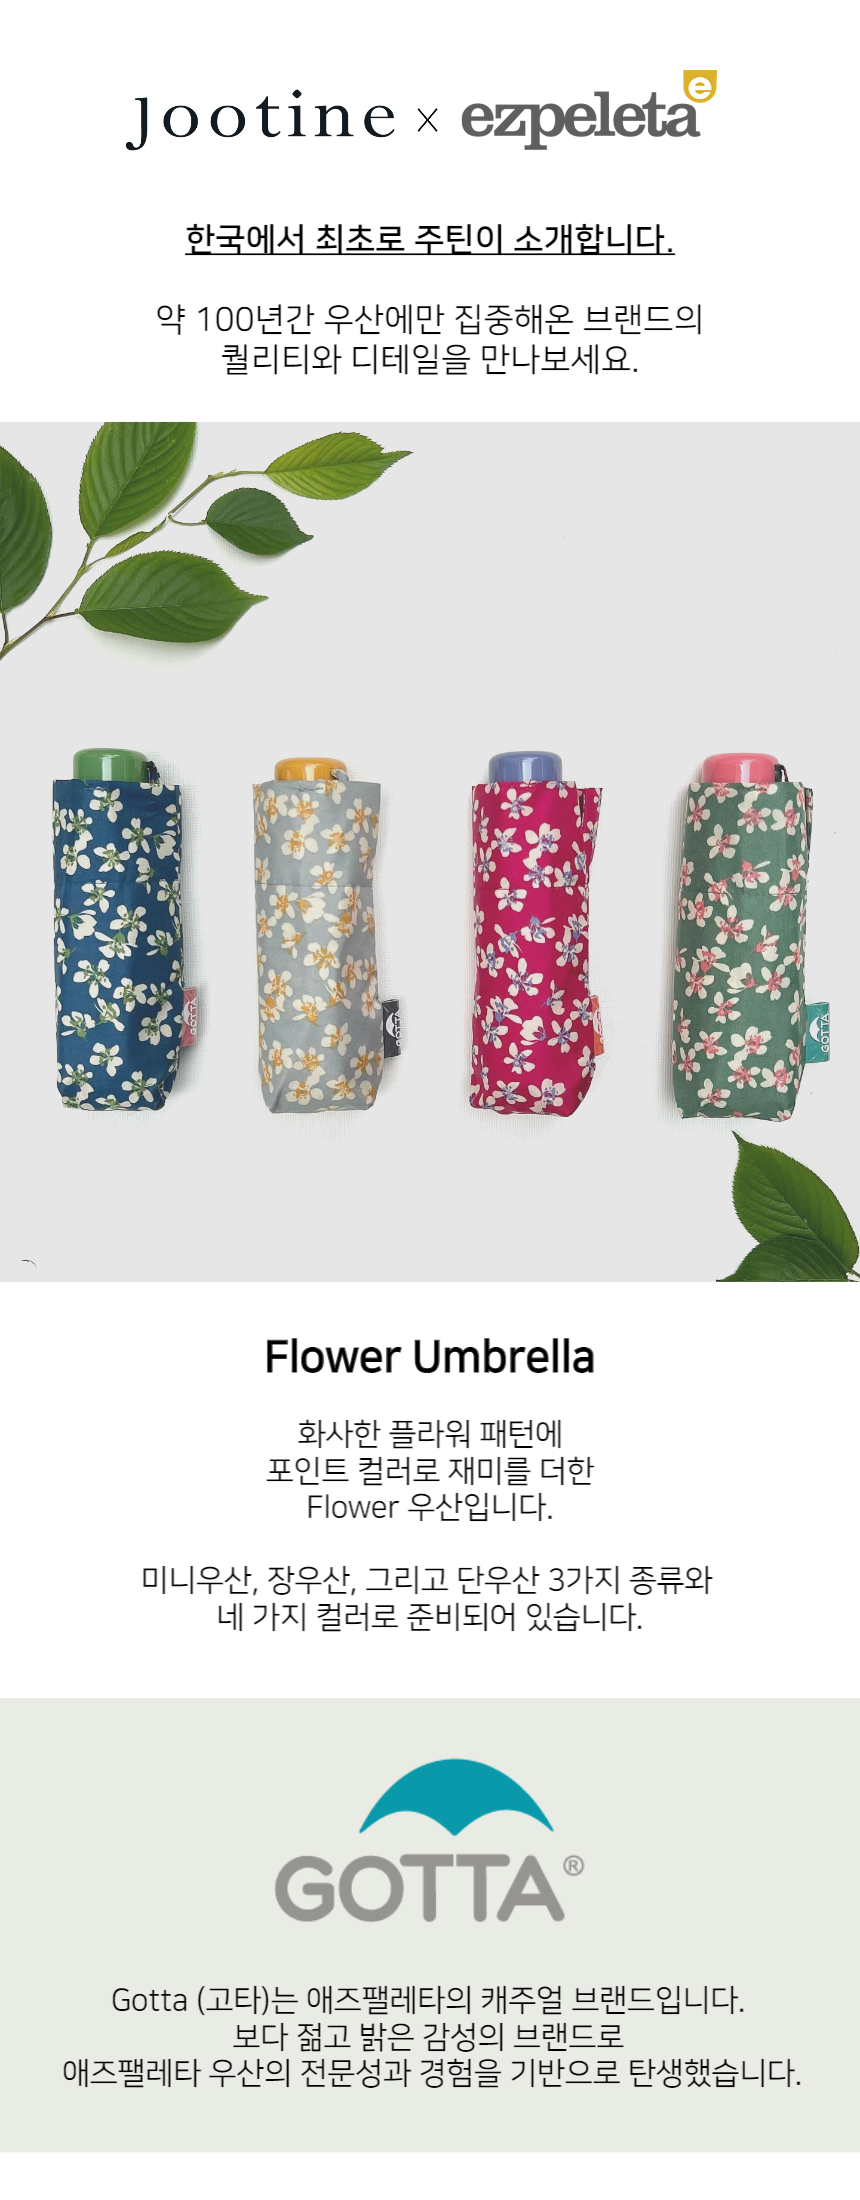 화사한 플라워 패턴에 컬러 포인트를 준 애즈팰레타의 캐주얼 브랜드 고타 우산입니다.